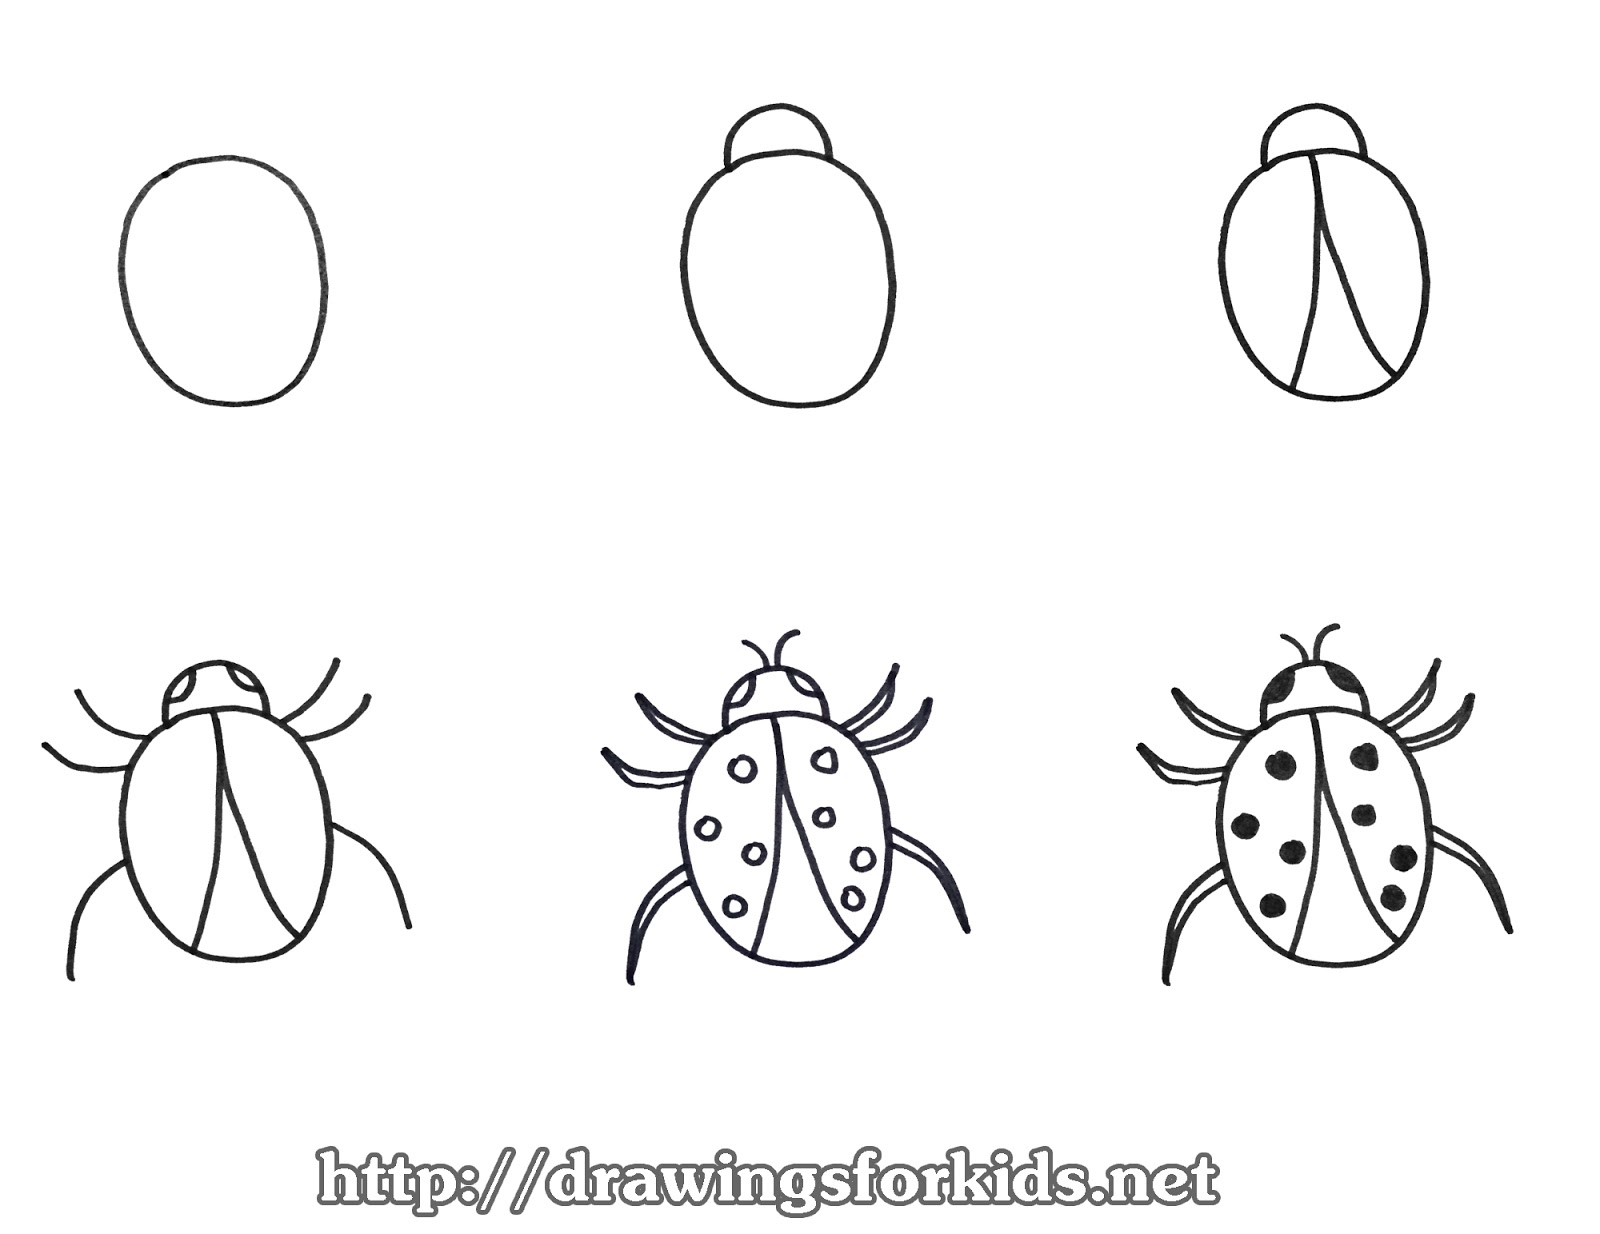 Hãy để con bạn trổ tài vẽ bọ rùa kute này với một hướng dẫn đơn giản nhưng rất dễ thương. Bạn sẽ nhìn thấy những nụ cười rạng ngời trên khuôn mặt của họ khi hoàn thành tác phẩm đầu tiên của mình.